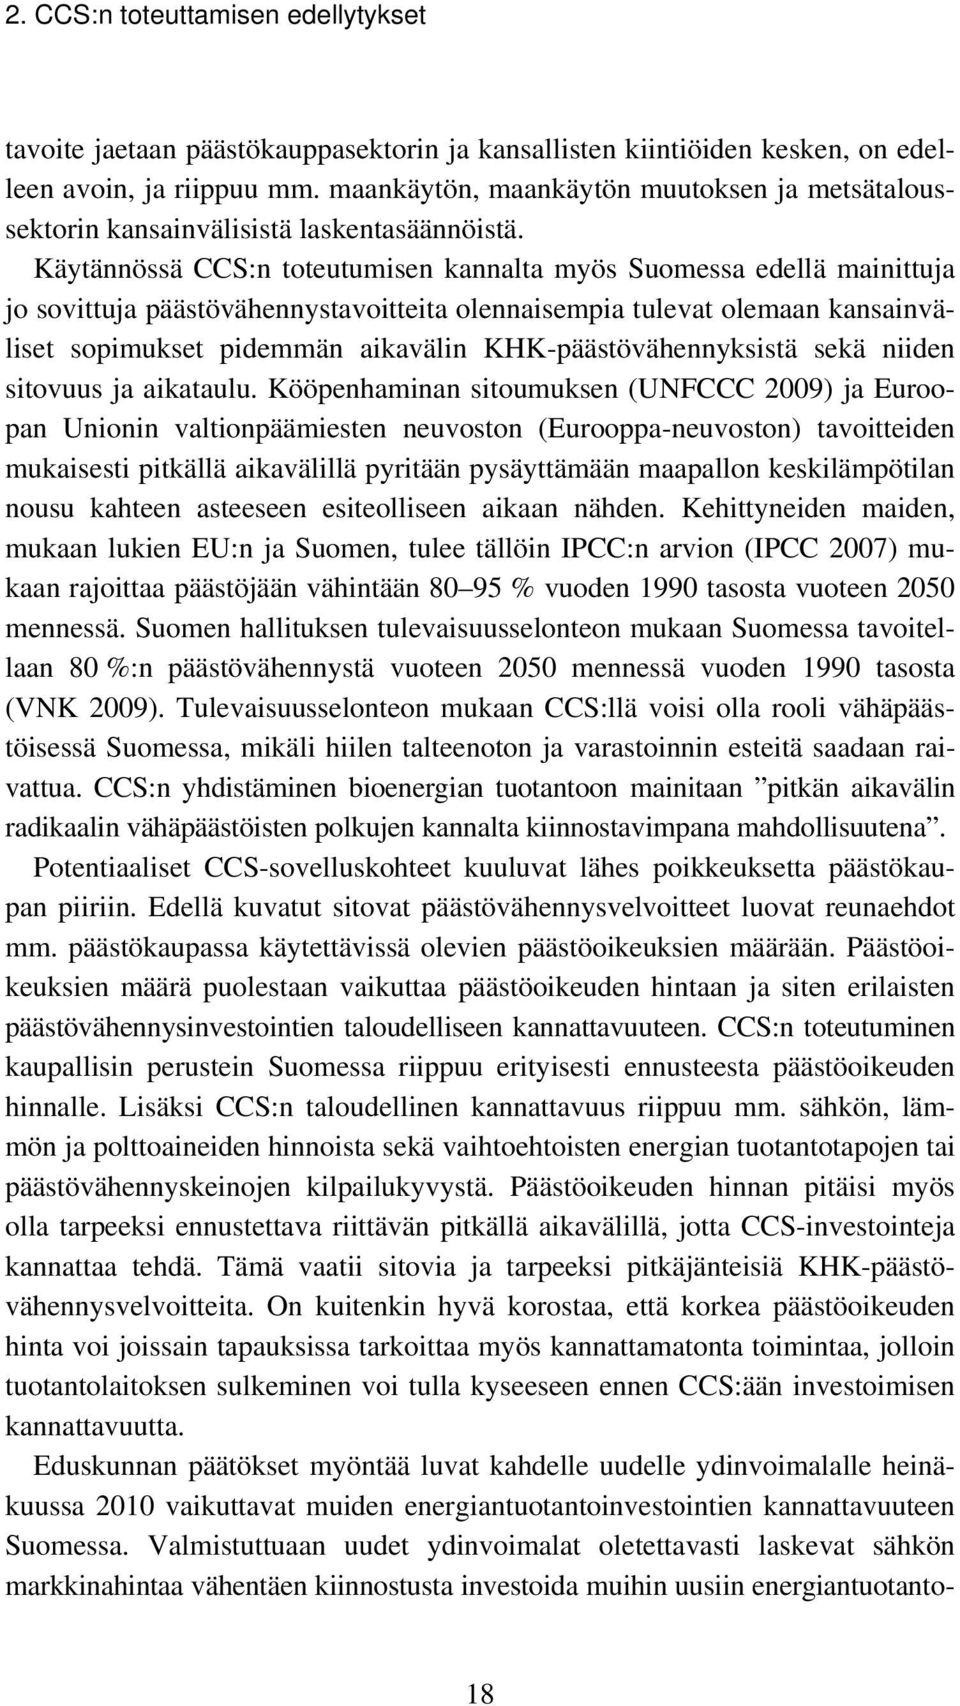 Käytännössä CCS:n toteutumisen kannalta myös Suomessa edellä mainittuja jo sovittuja päästövähennystavoitteita olennaisempia tulevat olemaan kansainväliset sopimukset pidemmän aikavälin